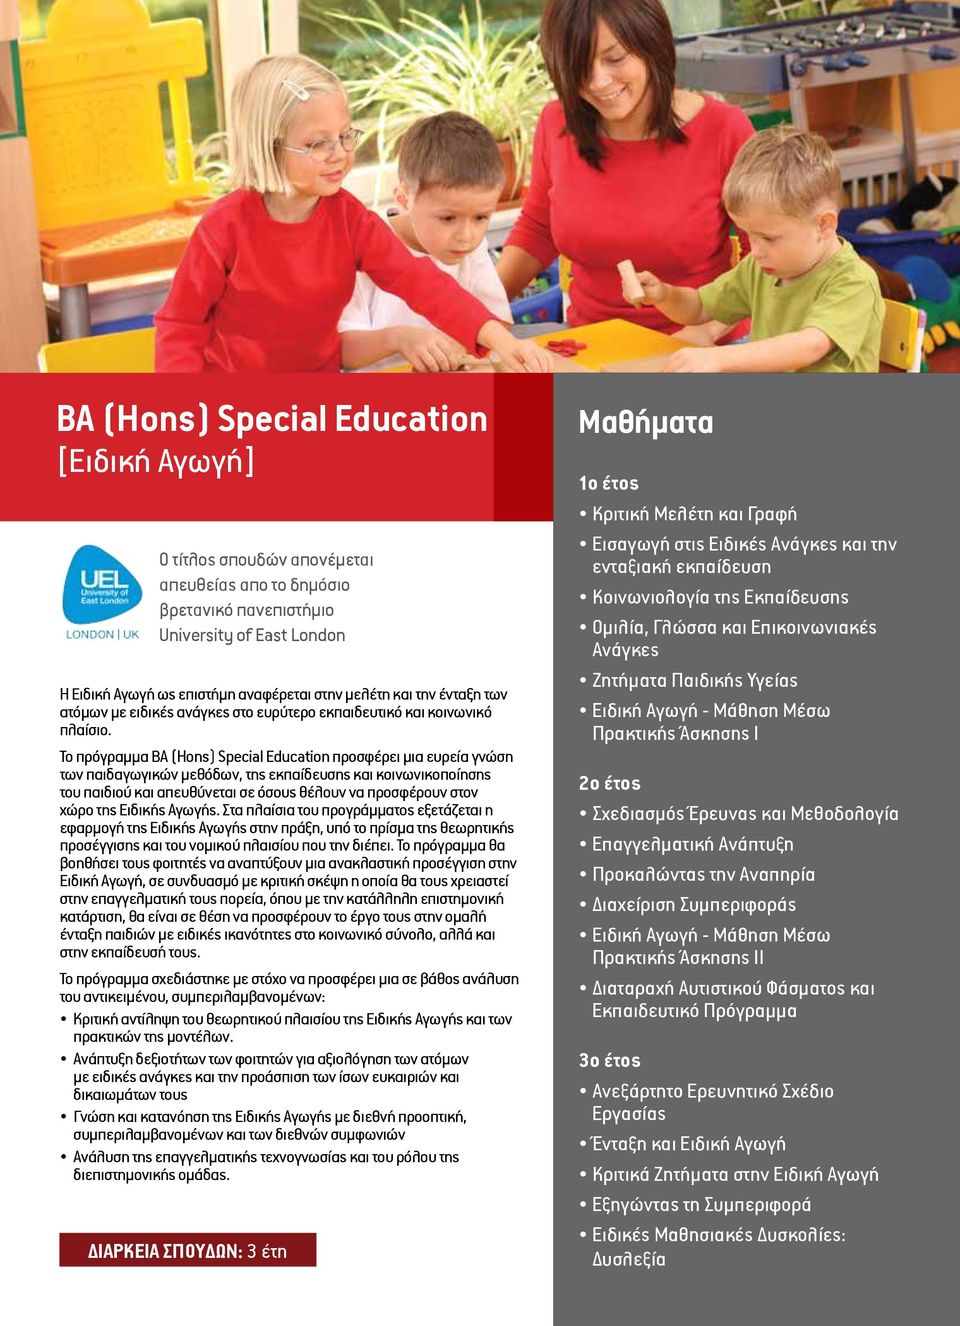 Το πρόγραμμα BA (Hons) Special Education προσφέρει μια ευρεία γνώση των παιδαγωγικών μεθόδων, της εκπαίδευσης και κοινωνικοποίησης του παιδιού και απευθύνεται σε όσους θέλουν να προσφέρουν στον χώρο